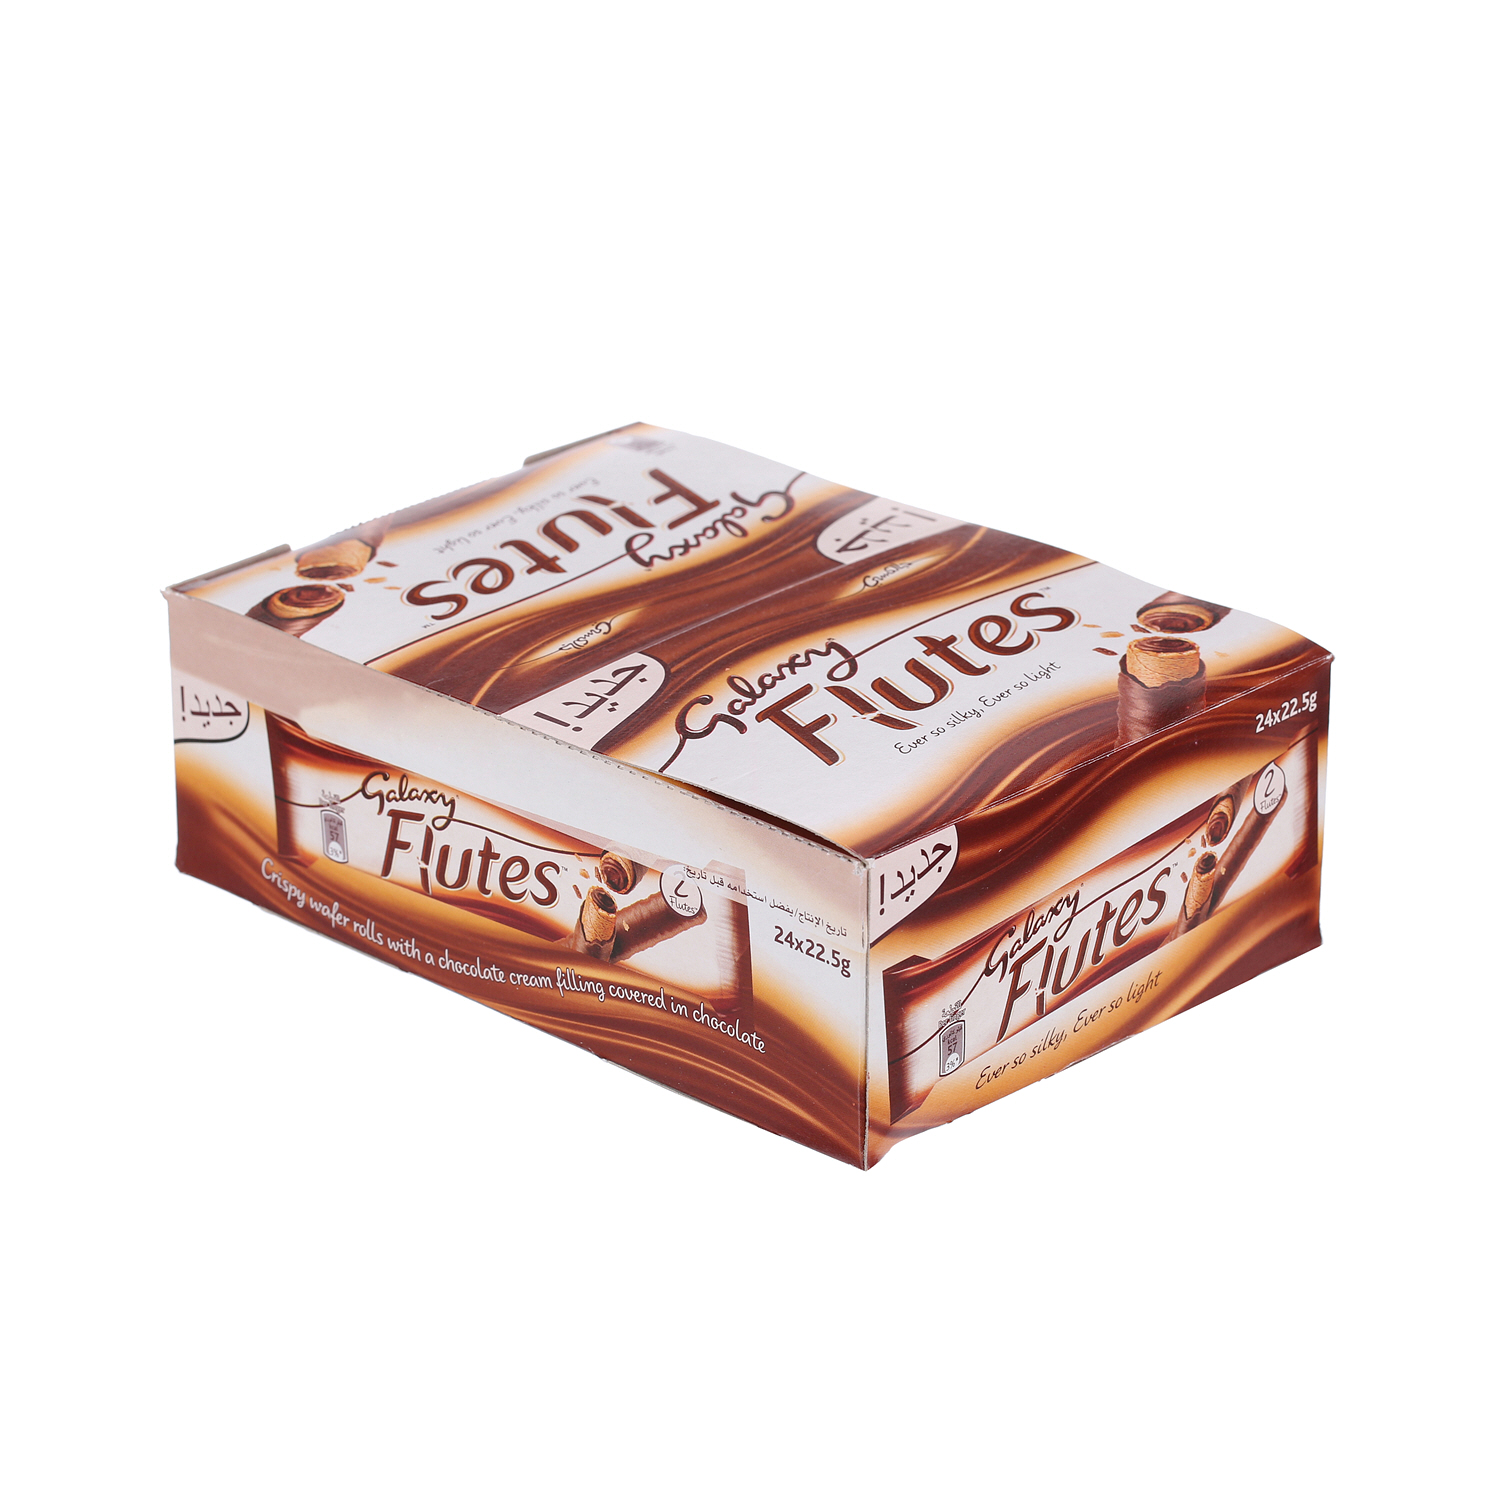 جالكسي فلوتس شوكولاتة توين فينجر 22.5 جرام × 24 علبة